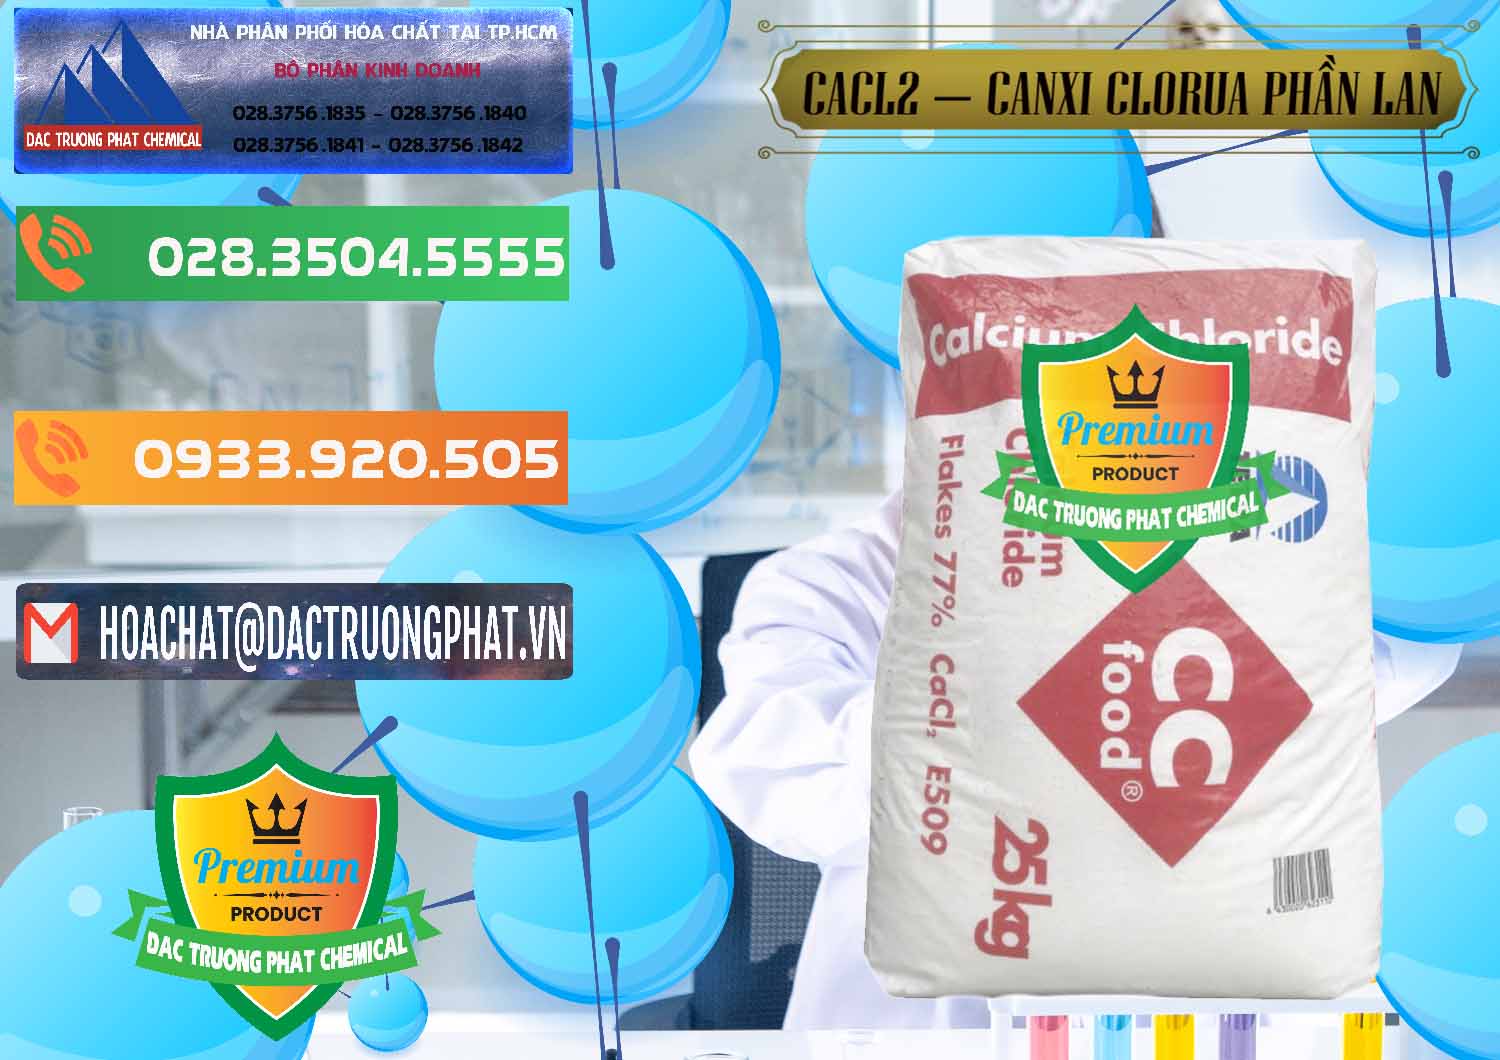 Chuyên bán - phân phối CaCl2 – Canxi Clorua Dạng Vảy 77% Tetra Phần Lan Finland - 0353 - Phân phối ( cung ứng ) hóa chất tại TP.HCM - hoachatxulynuoc.com.vn